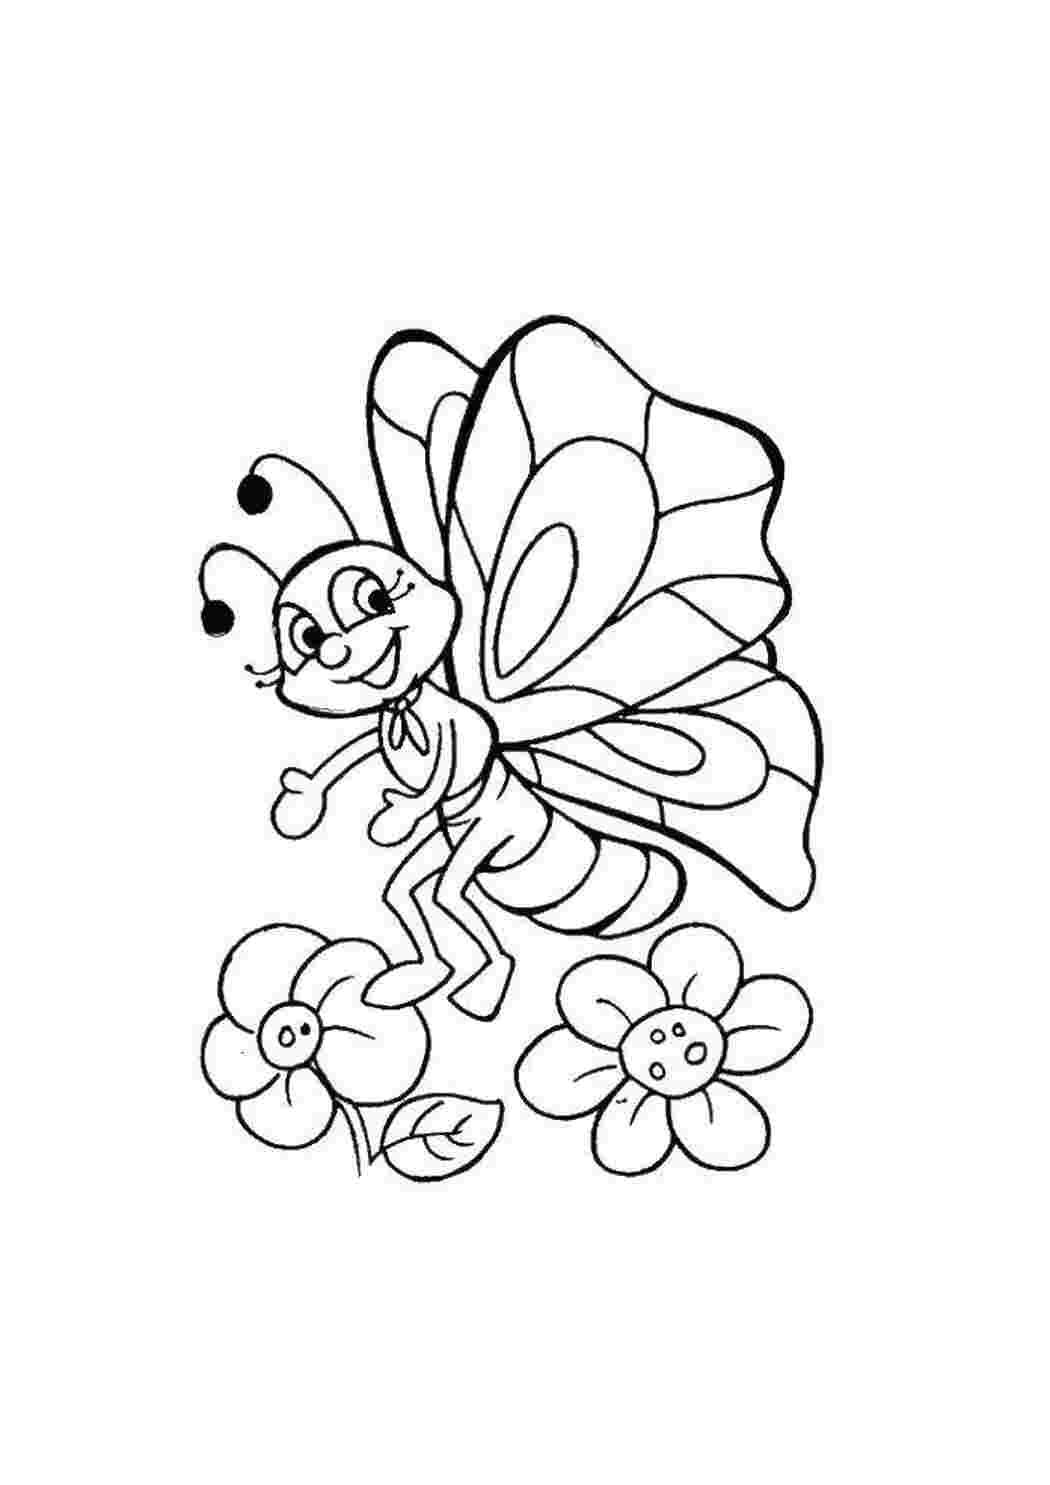 Раскраска Бабочки и цветы распечатать - Весна